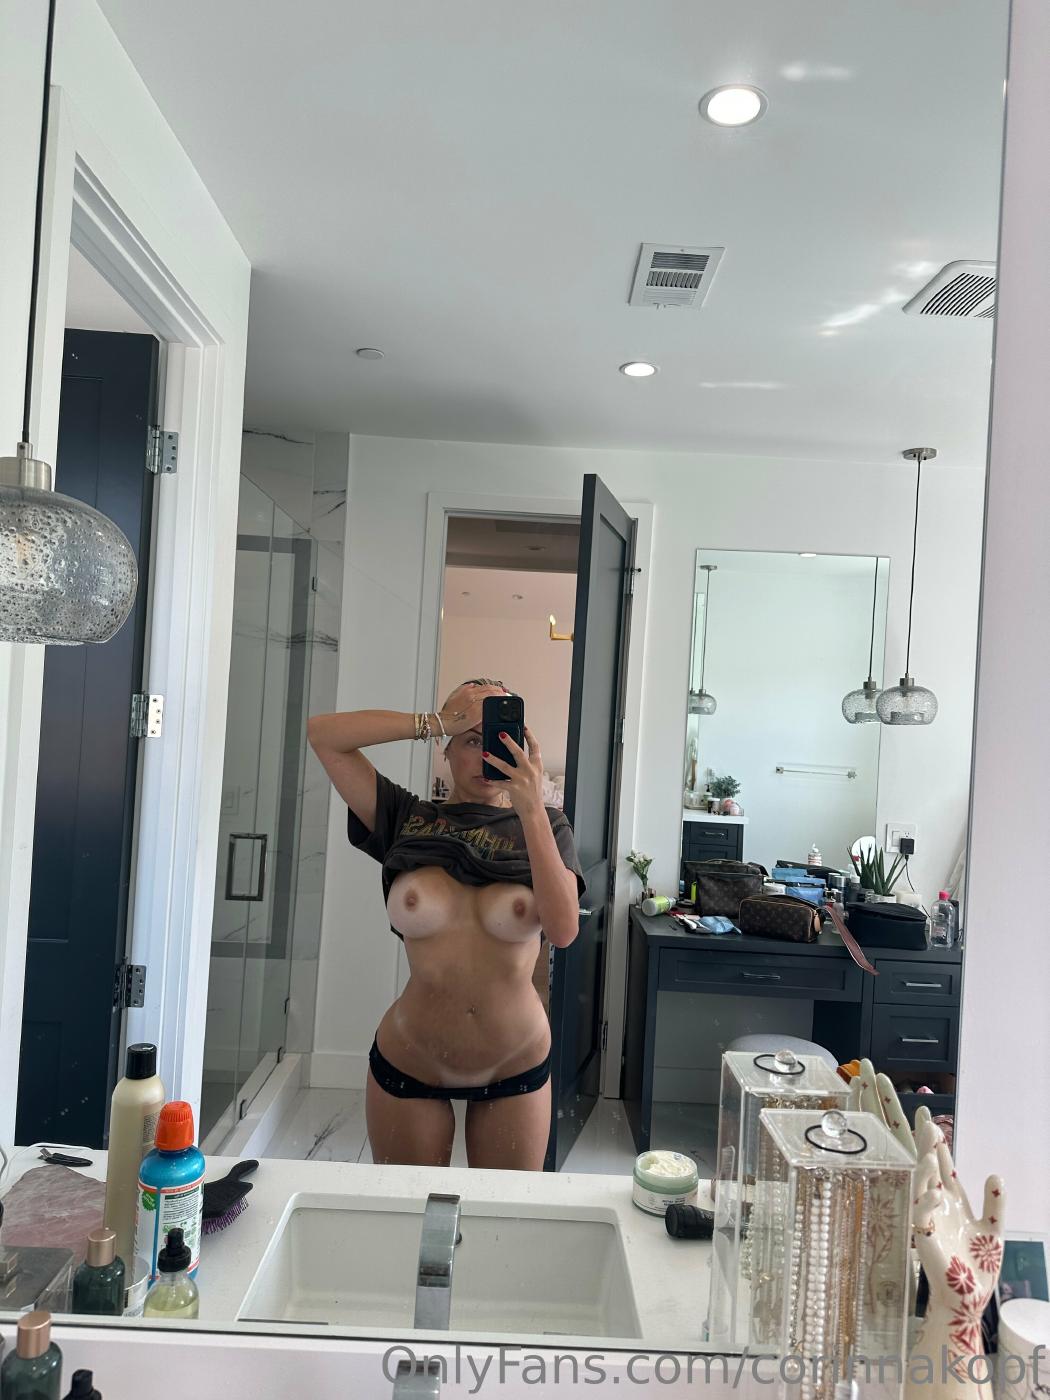 Corinna Kopf Nude Topless Mirror Selfies Onlyfans Set Leaked – Influencers Gonewild